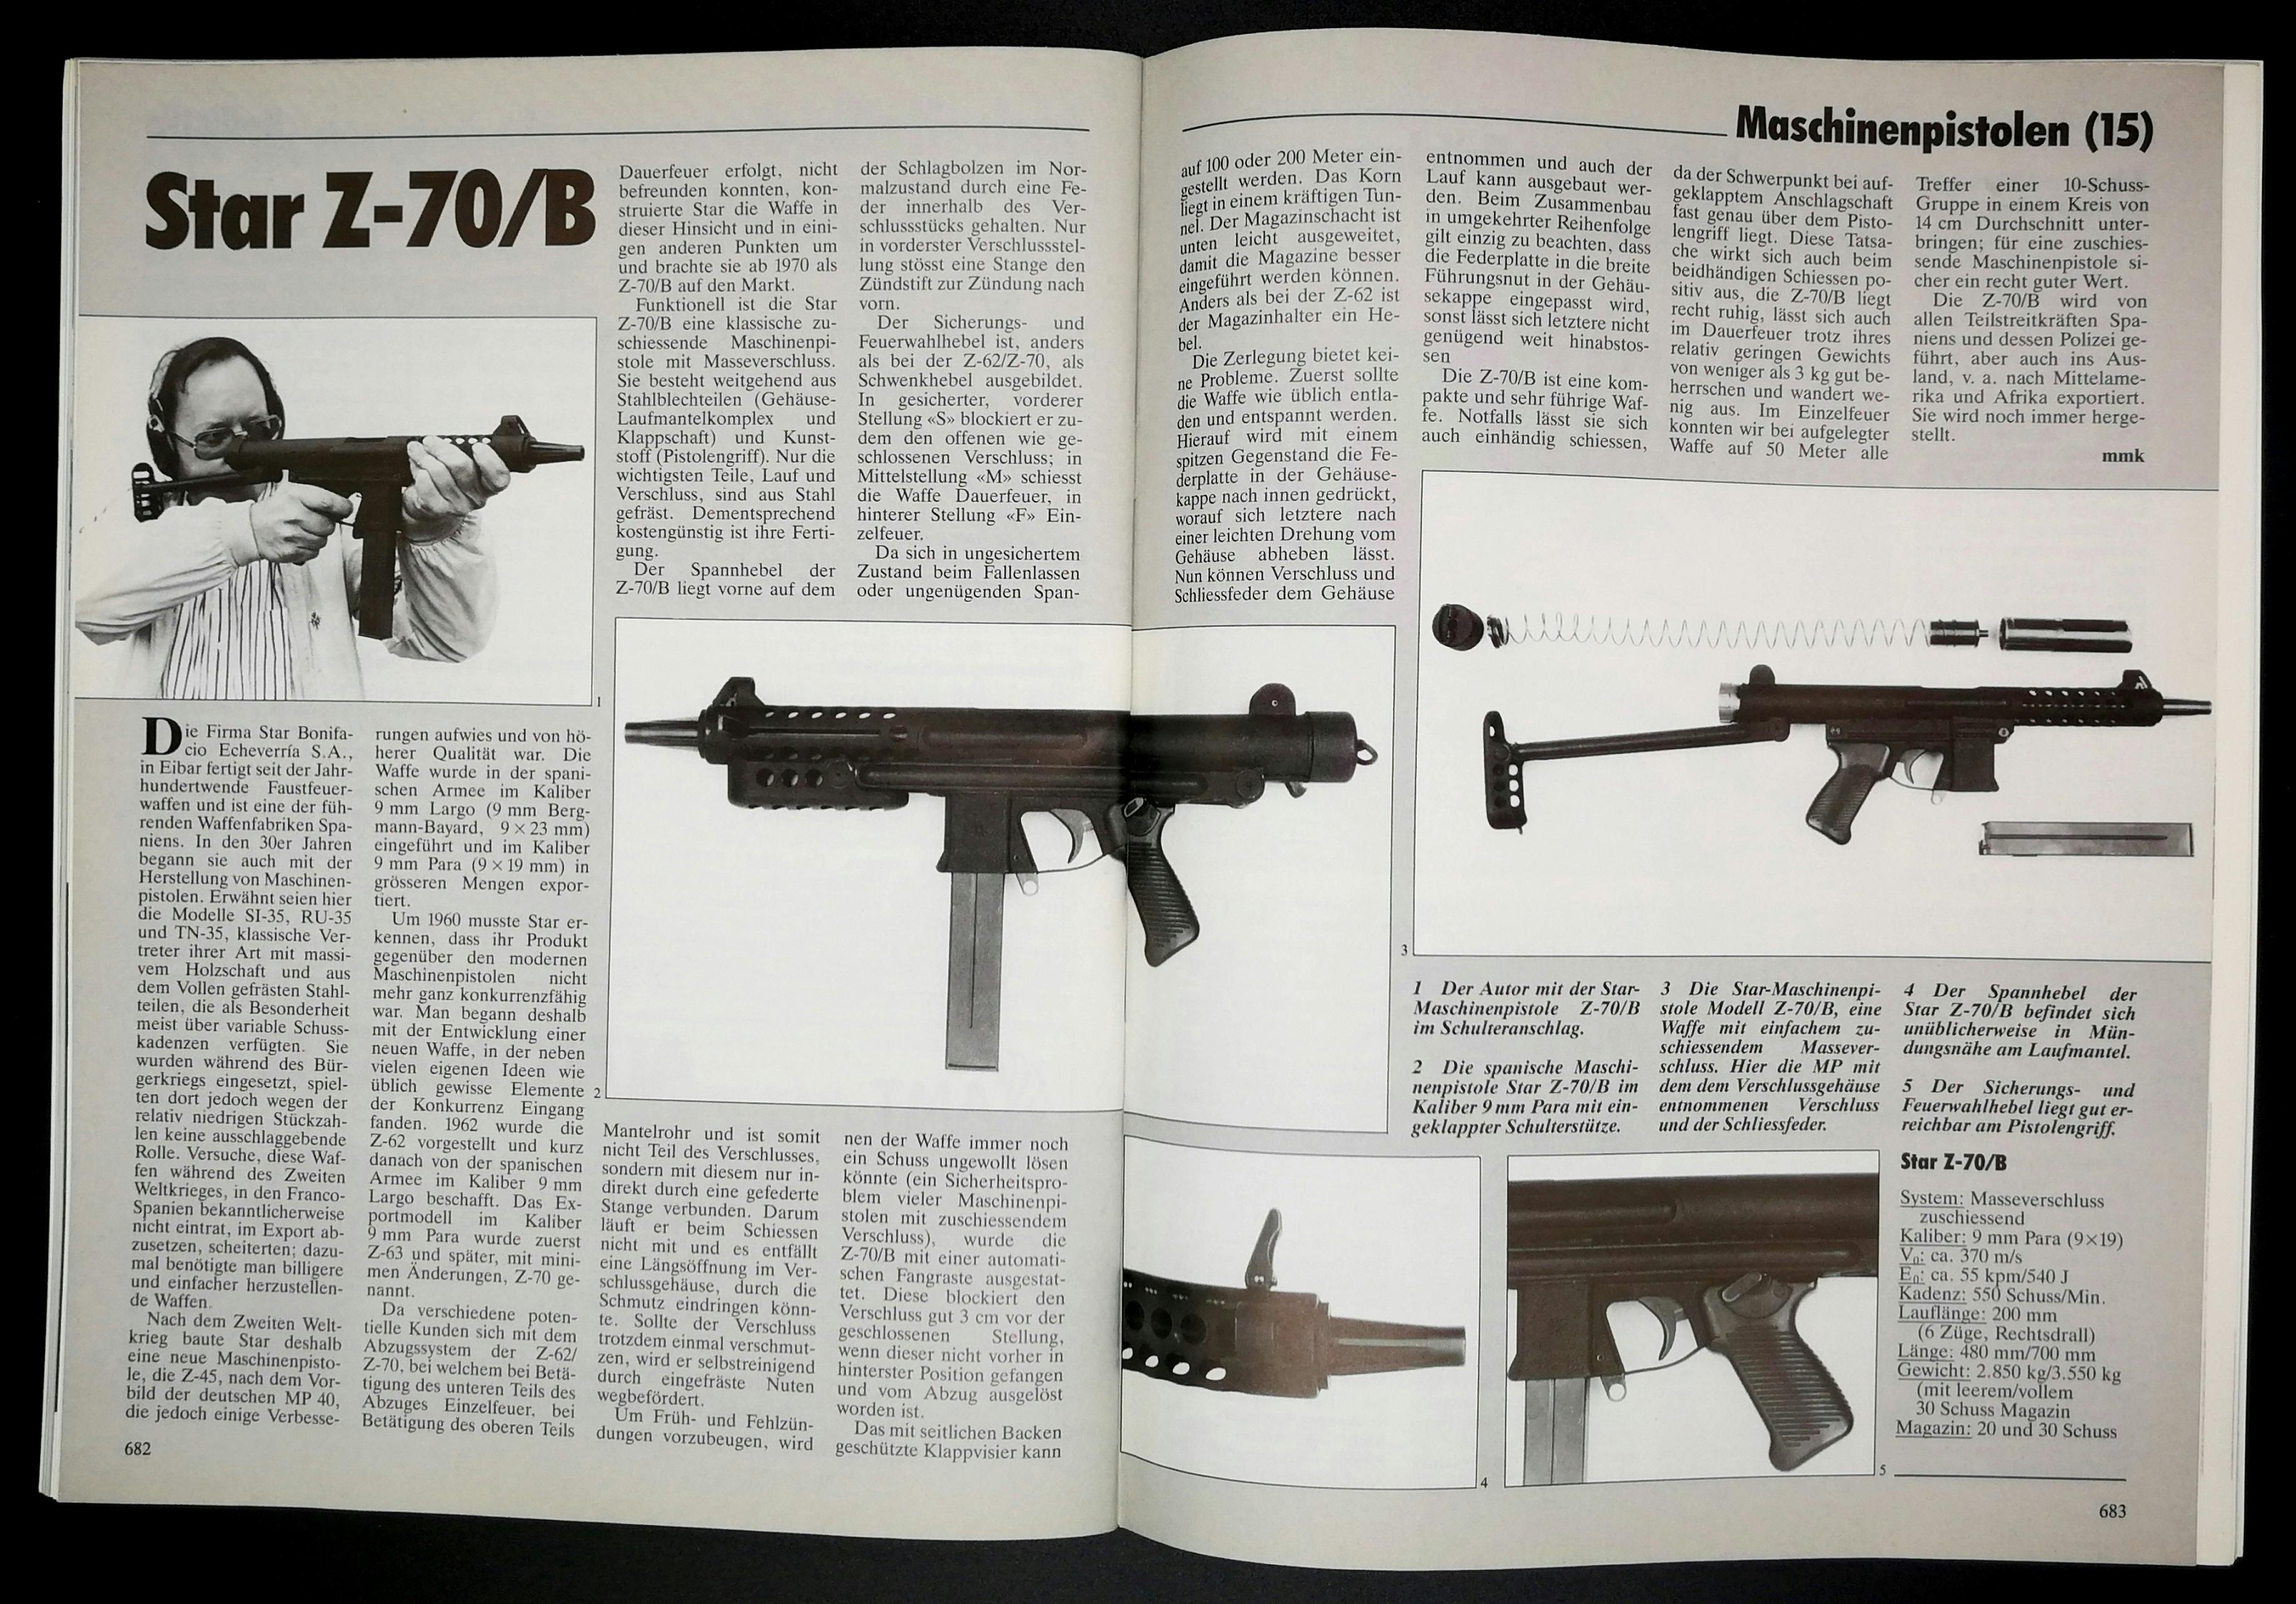 Iberische Maschinenpistole im Detail: Star Z-70/B um 1962 herum.
